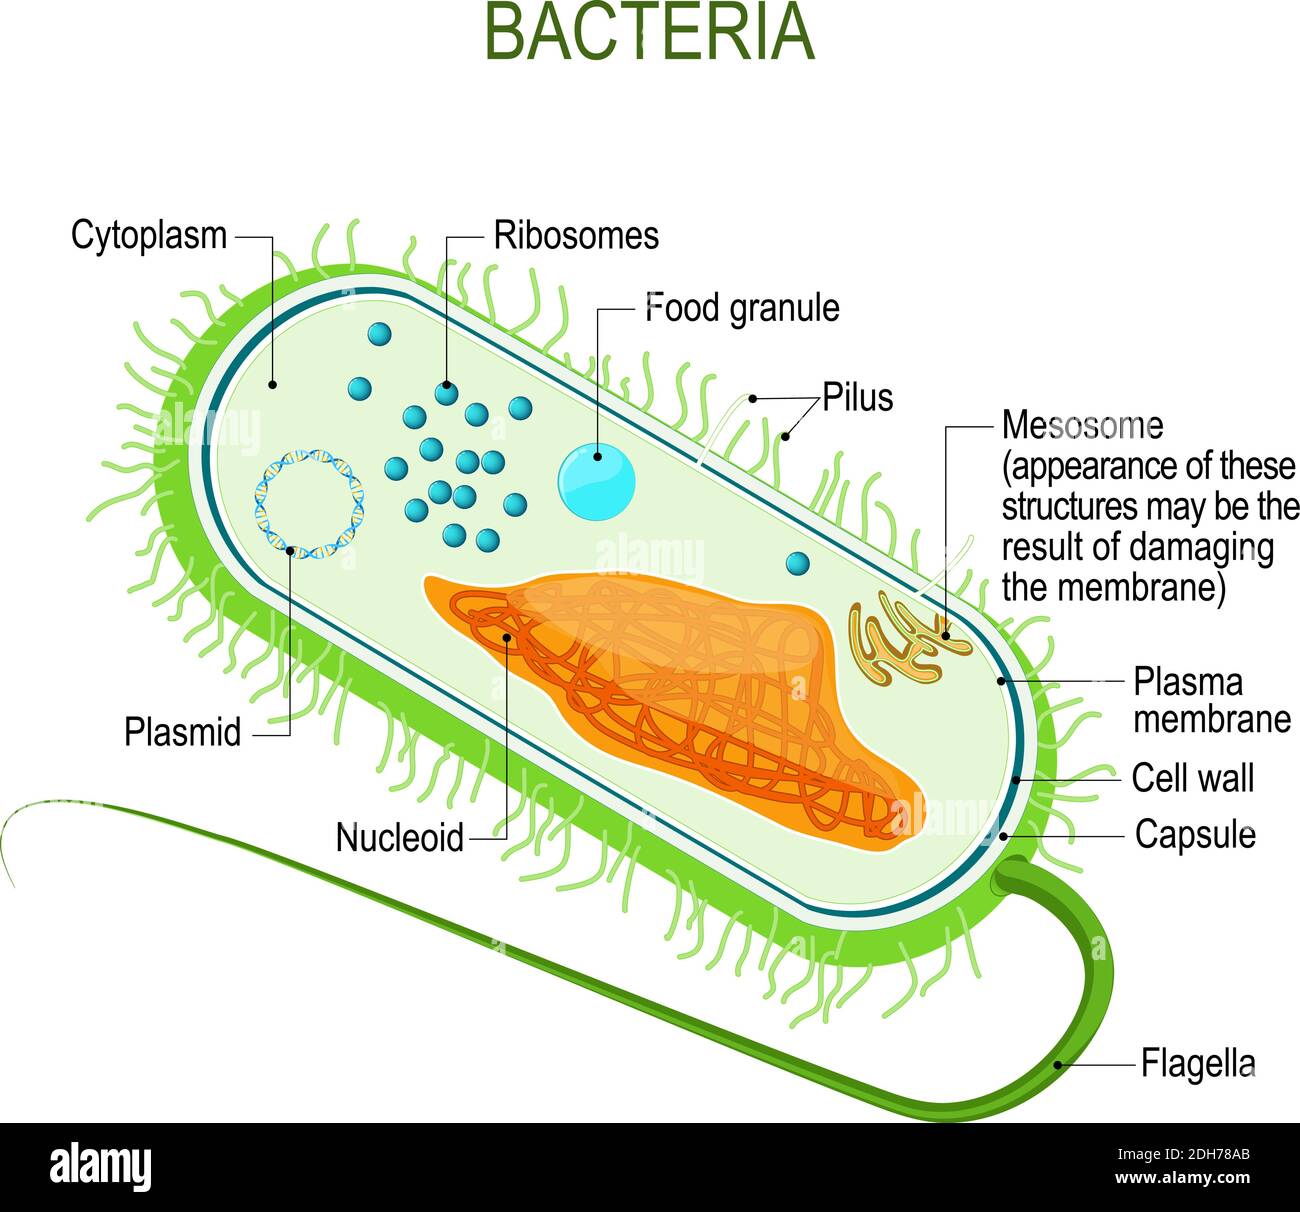 Struttura di una cellula batterica. Anatomia del procariote. Organismo unicellulare. Diagramma vettoriale per la progettazione, l'istruzione, la medicina, l'uso biologico Illustrazione Vettoriale